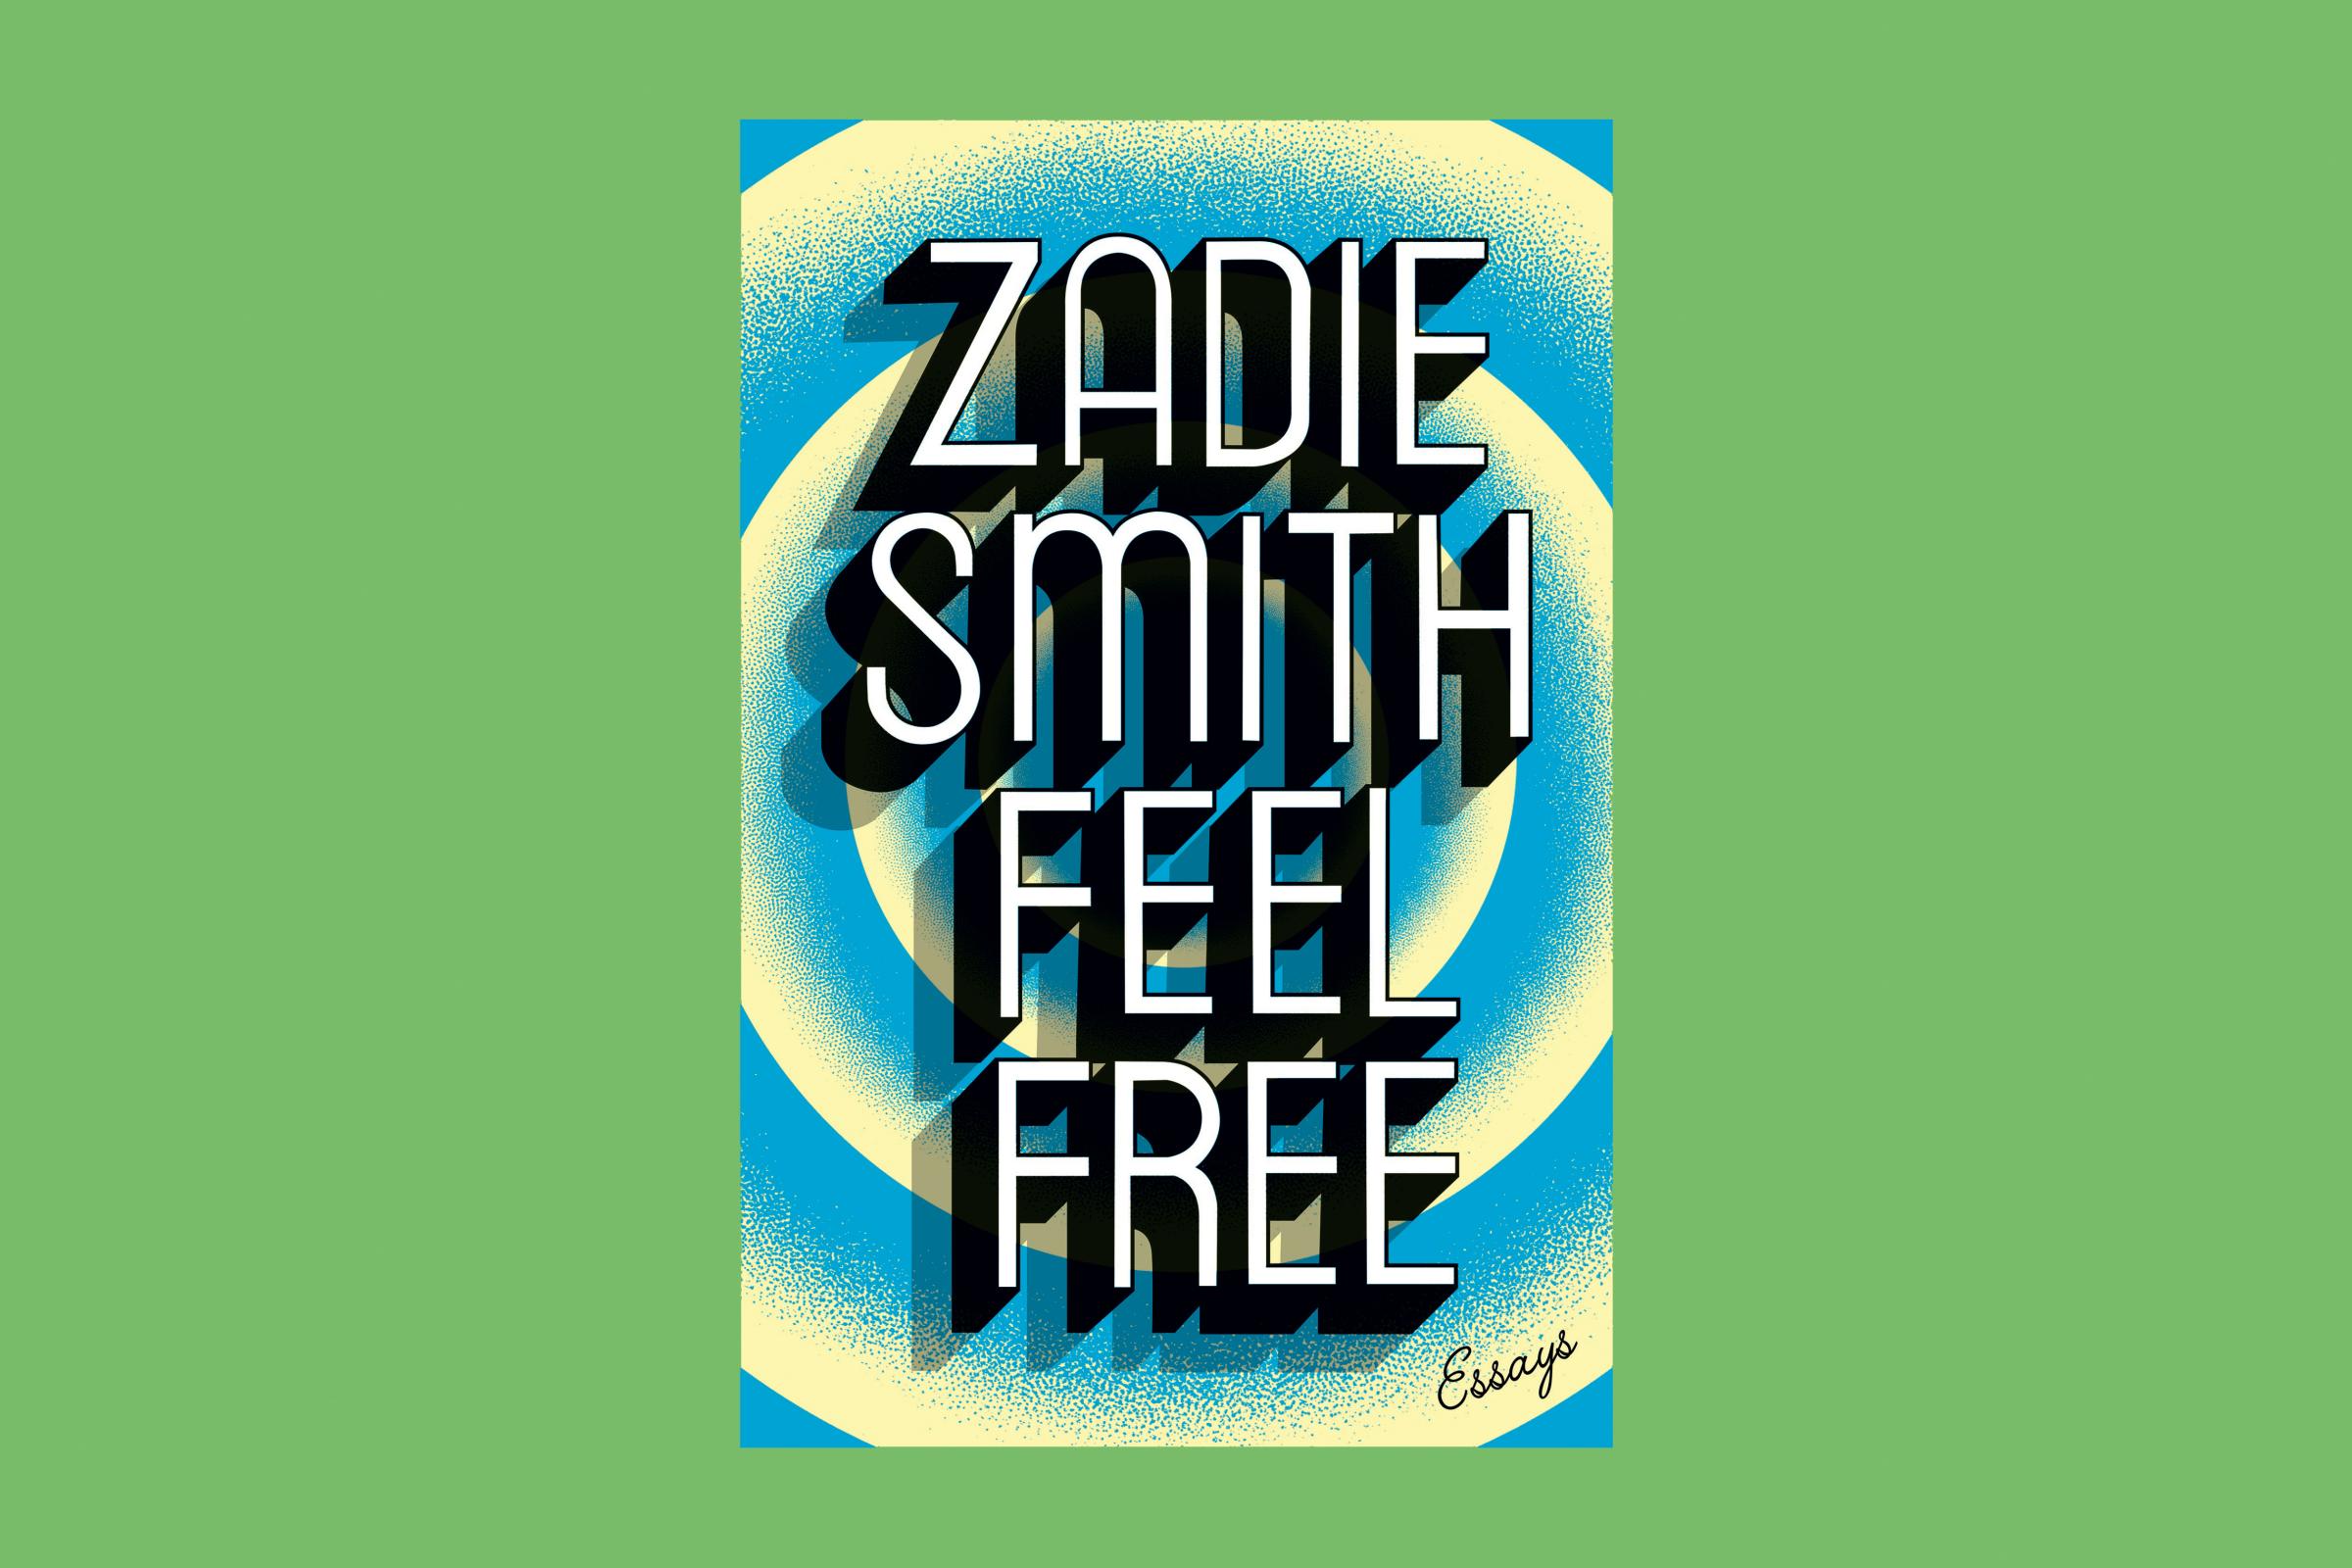 Zadie Smith Feel Free